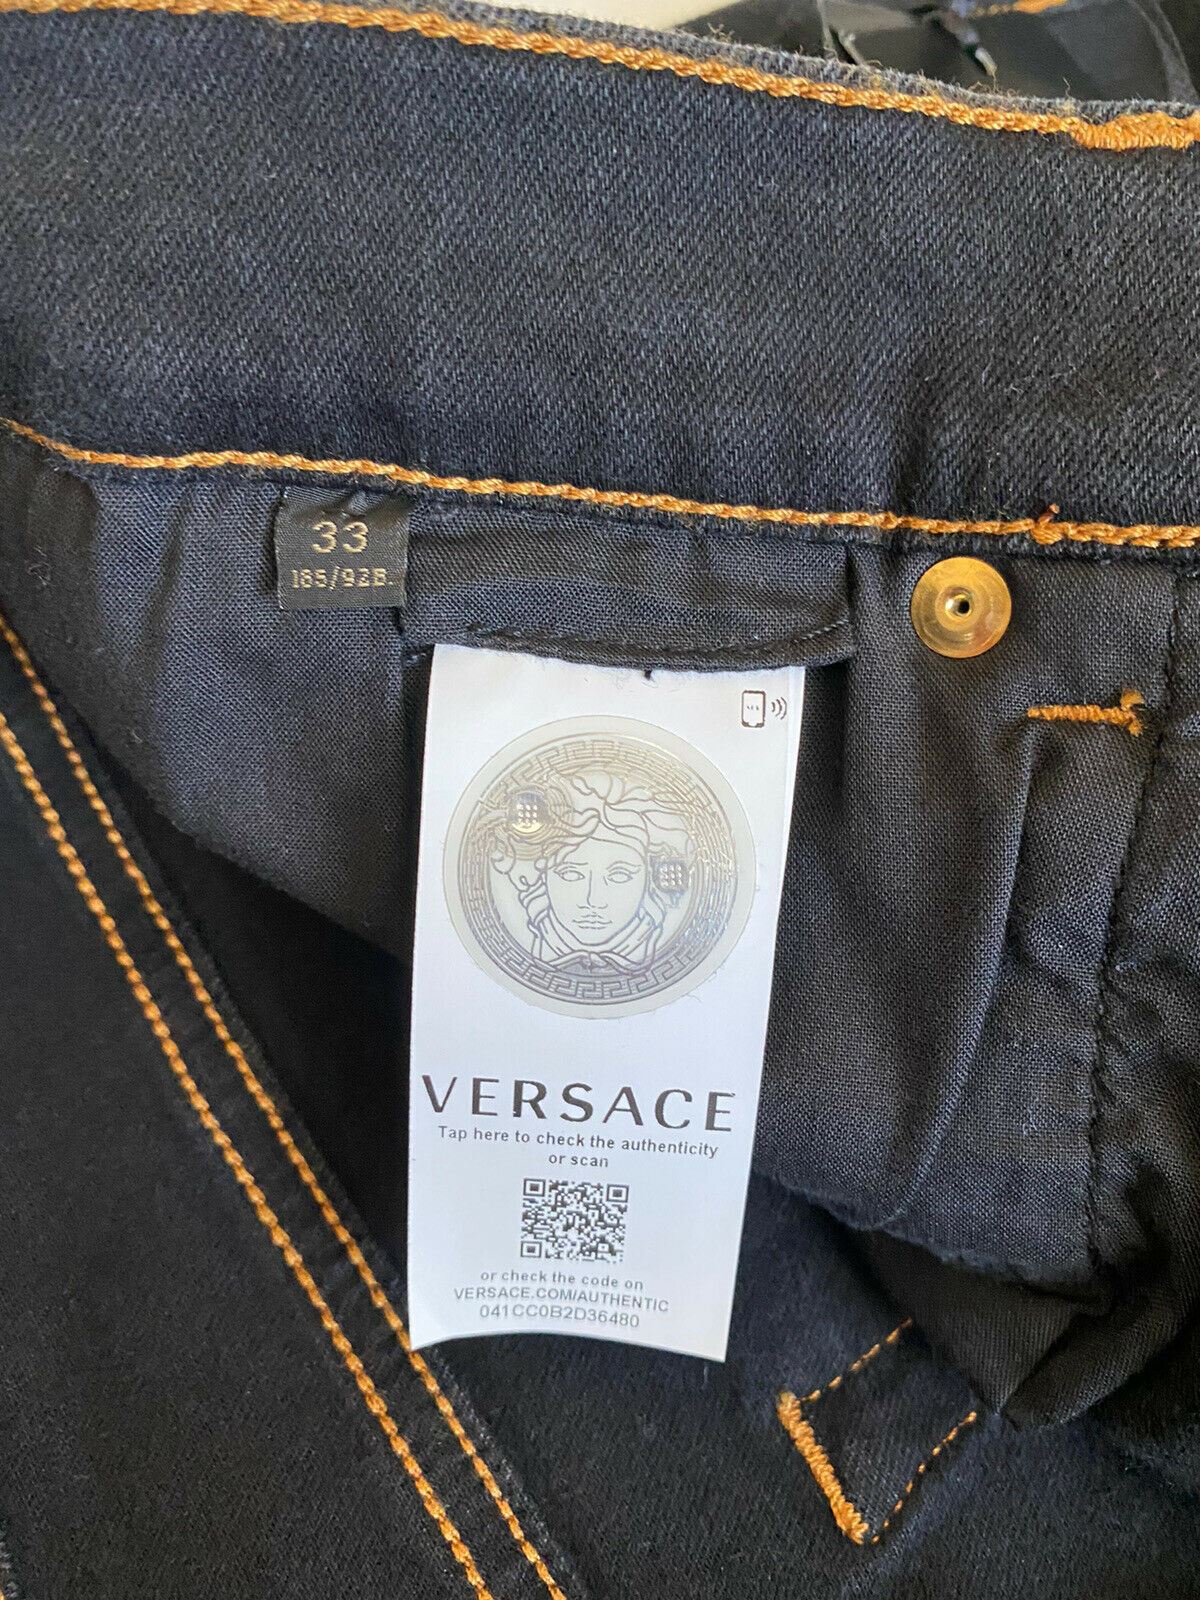 Neu mit Etikett: 450 $ Versace Herren-Denim-Jeans in Schwarz, Größe 33 US A84998S, hergestellt in Italien